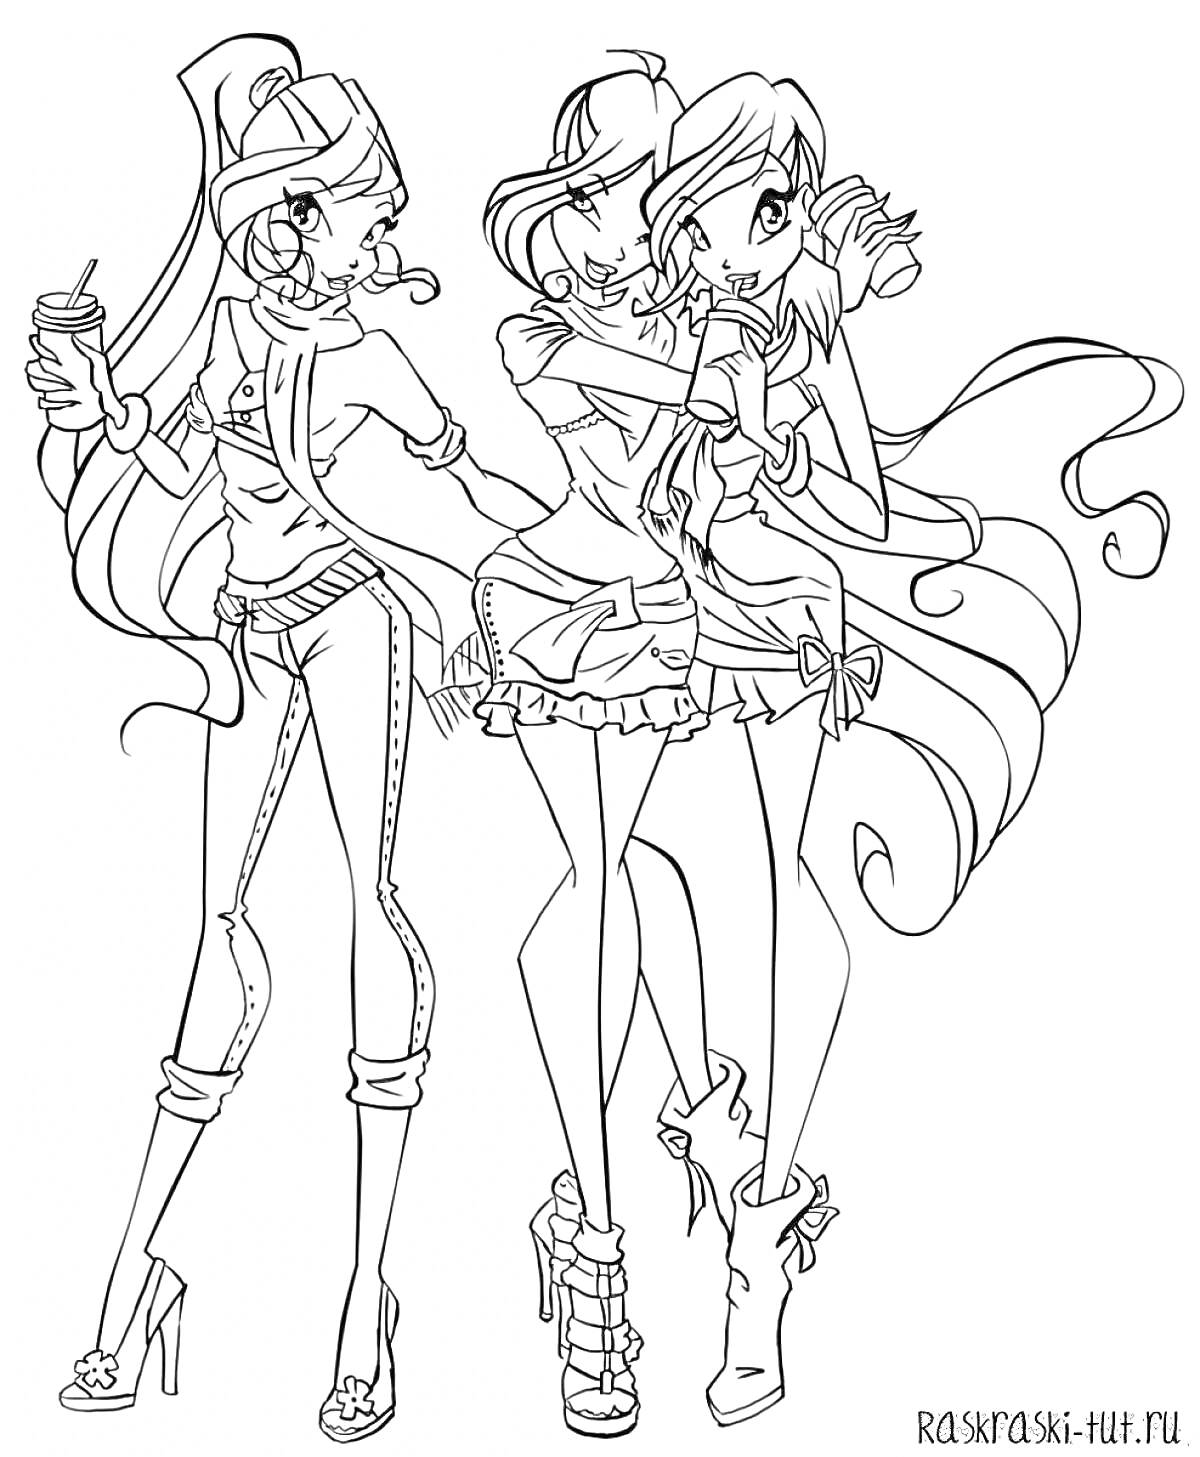 Раскраска Трое девушек из клуба Винкс с длинными волосами и модной одеждой, одна пьет напиток, остальные двое обнимаются